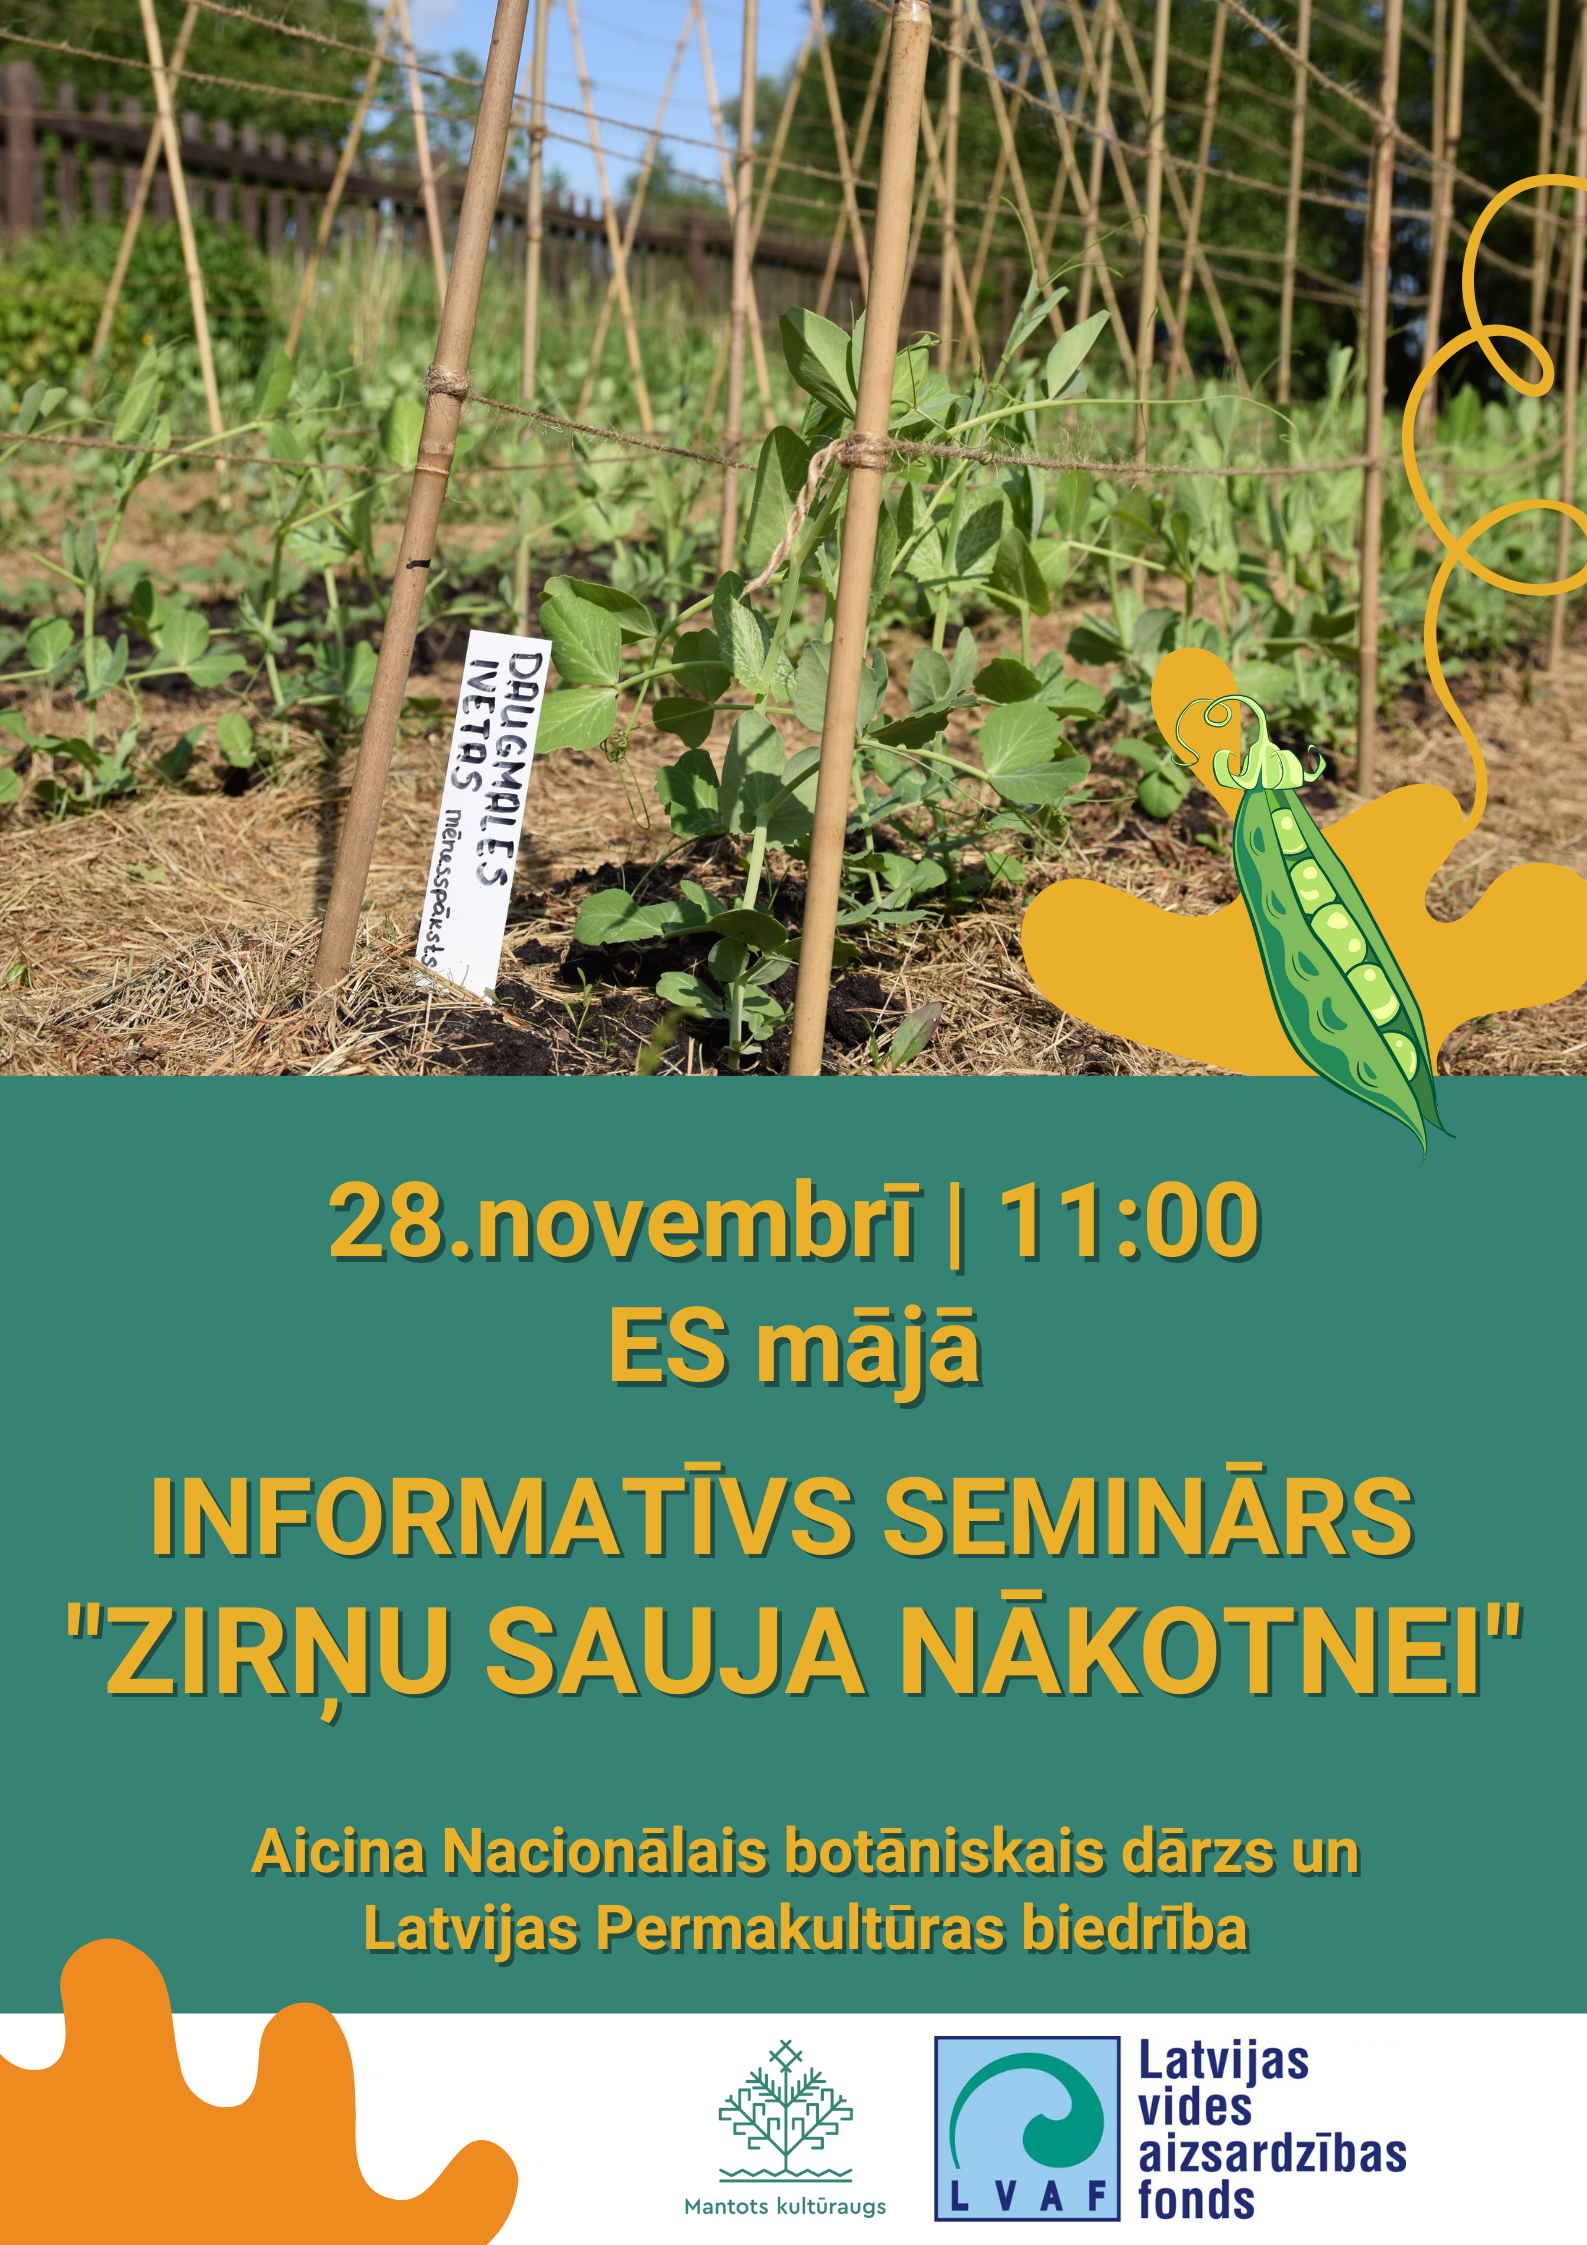 Nacionālais botāniskais dārzs un Latvijas Permakultūras biedrība aicina uz semināru "Zirņu sauja nākotnei" 28.novembrī plkst. 11:00 ES mājā